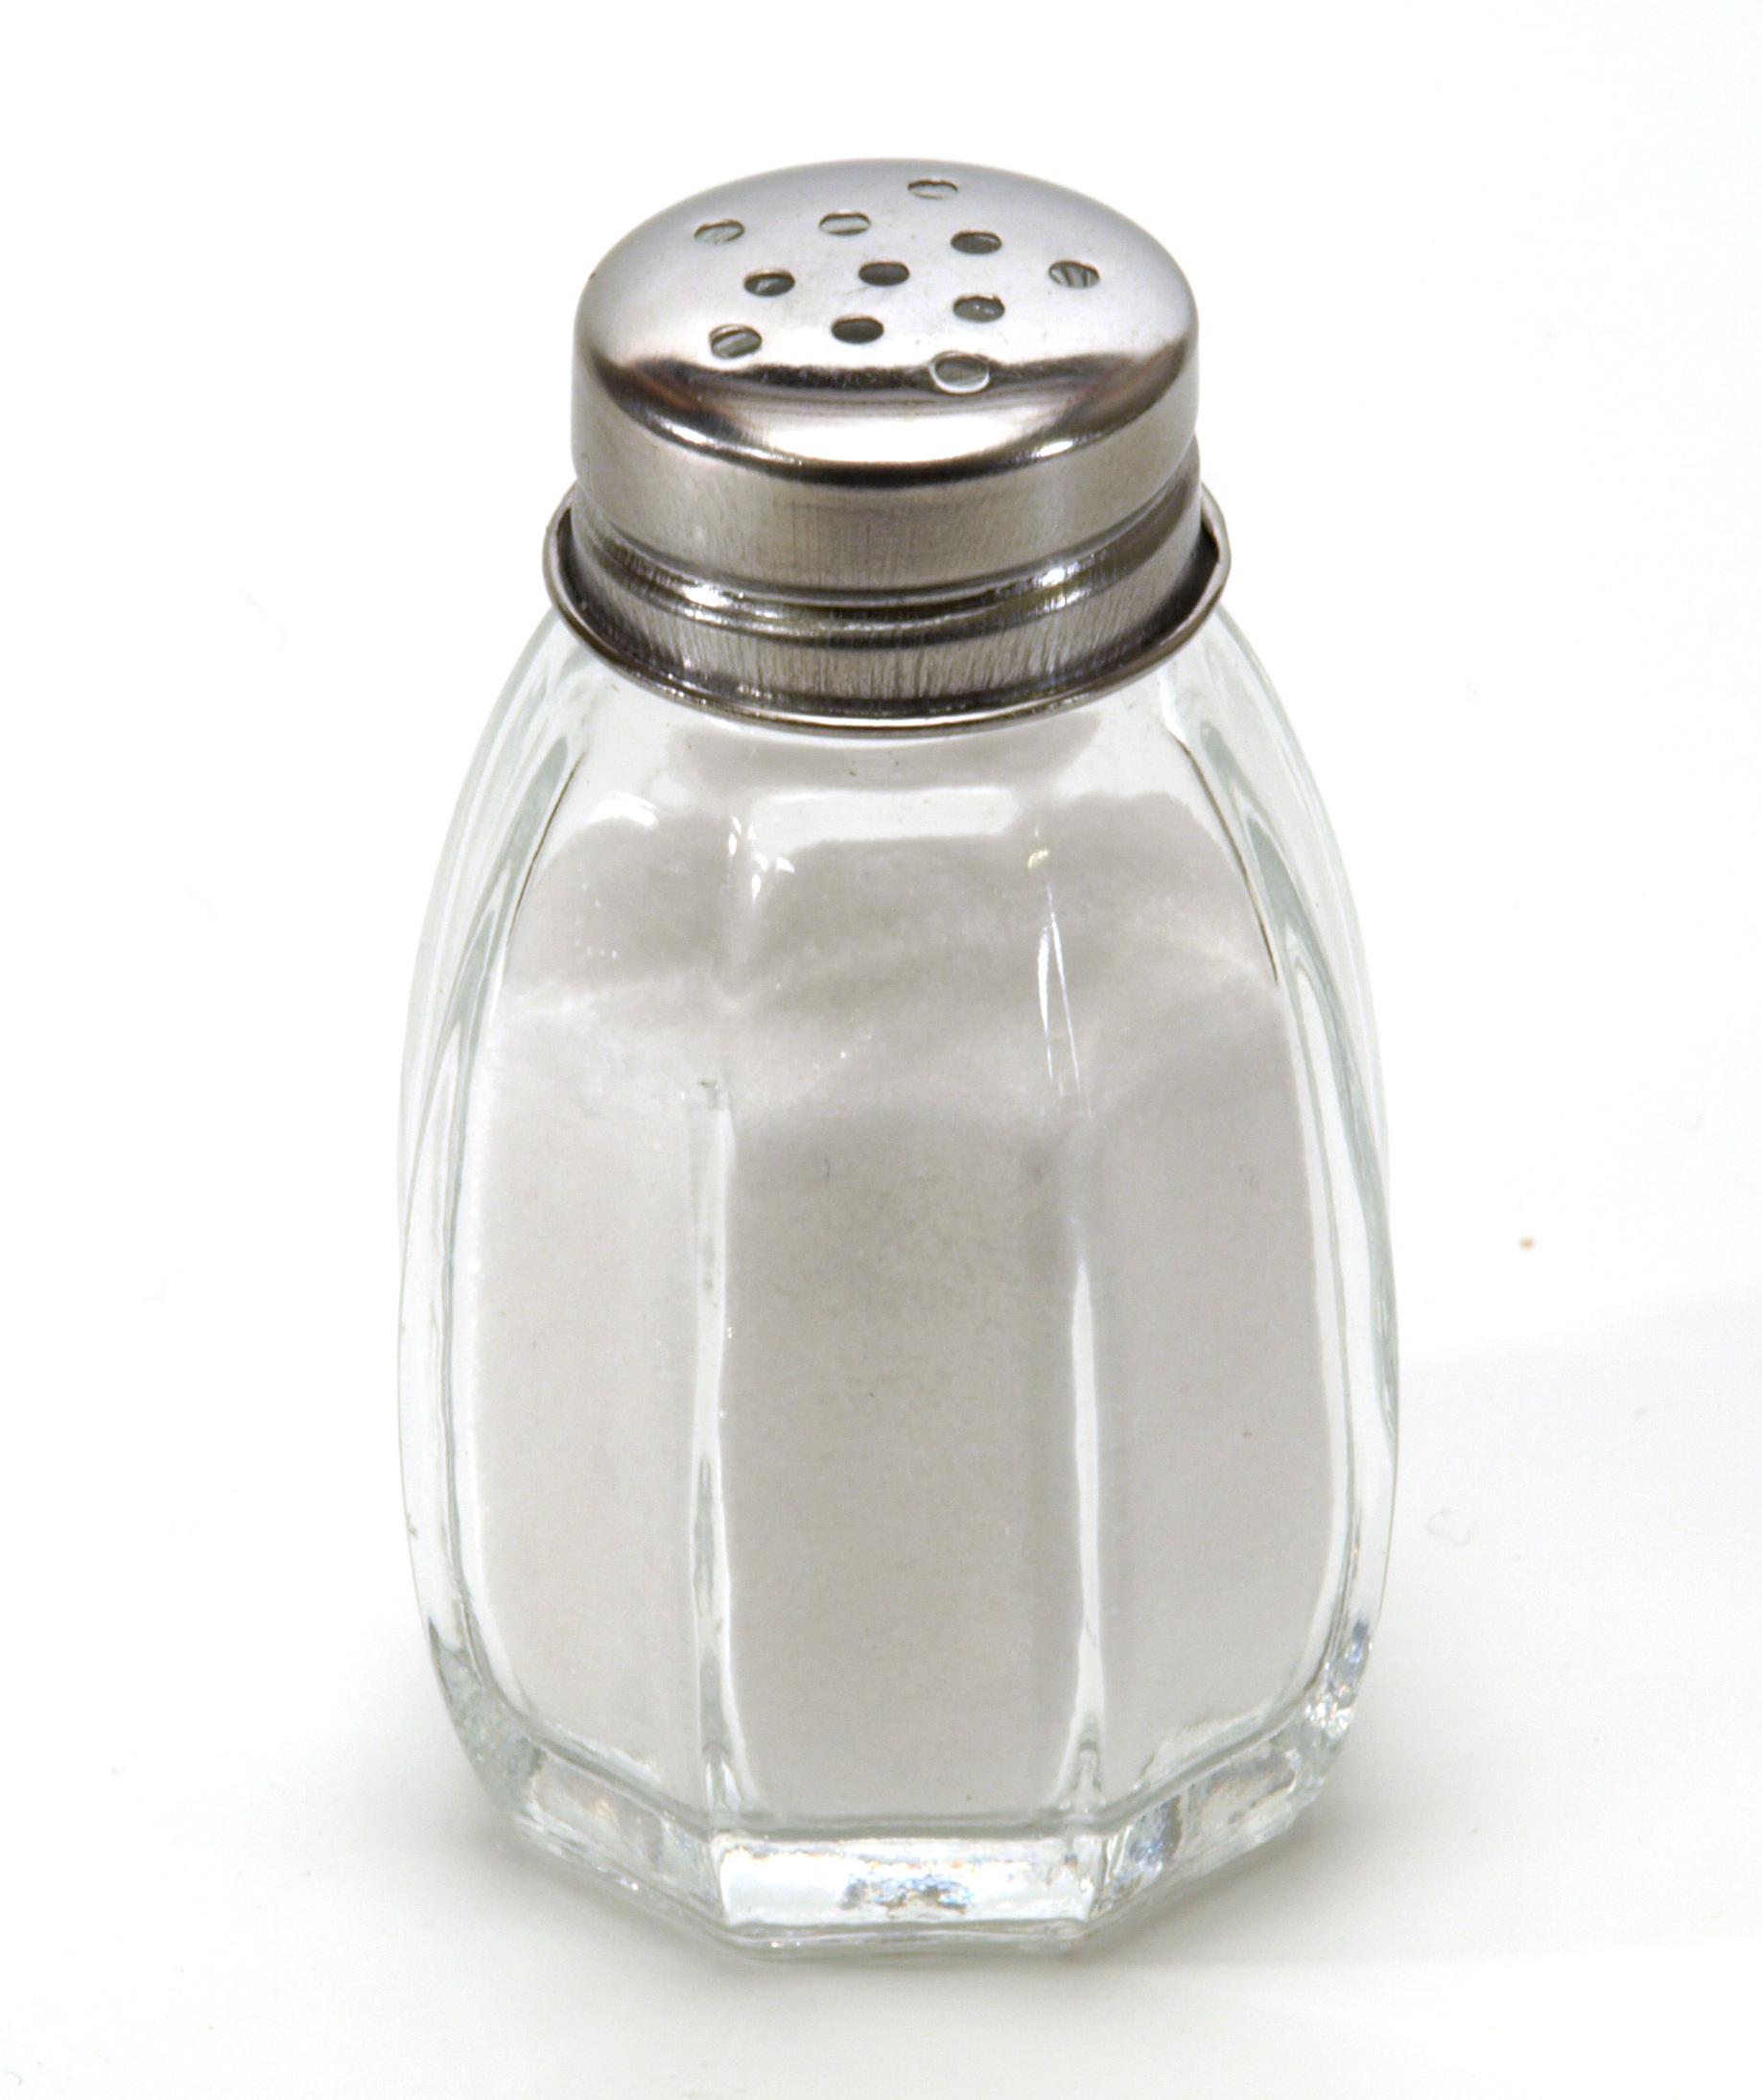 A salt shaker full of salt